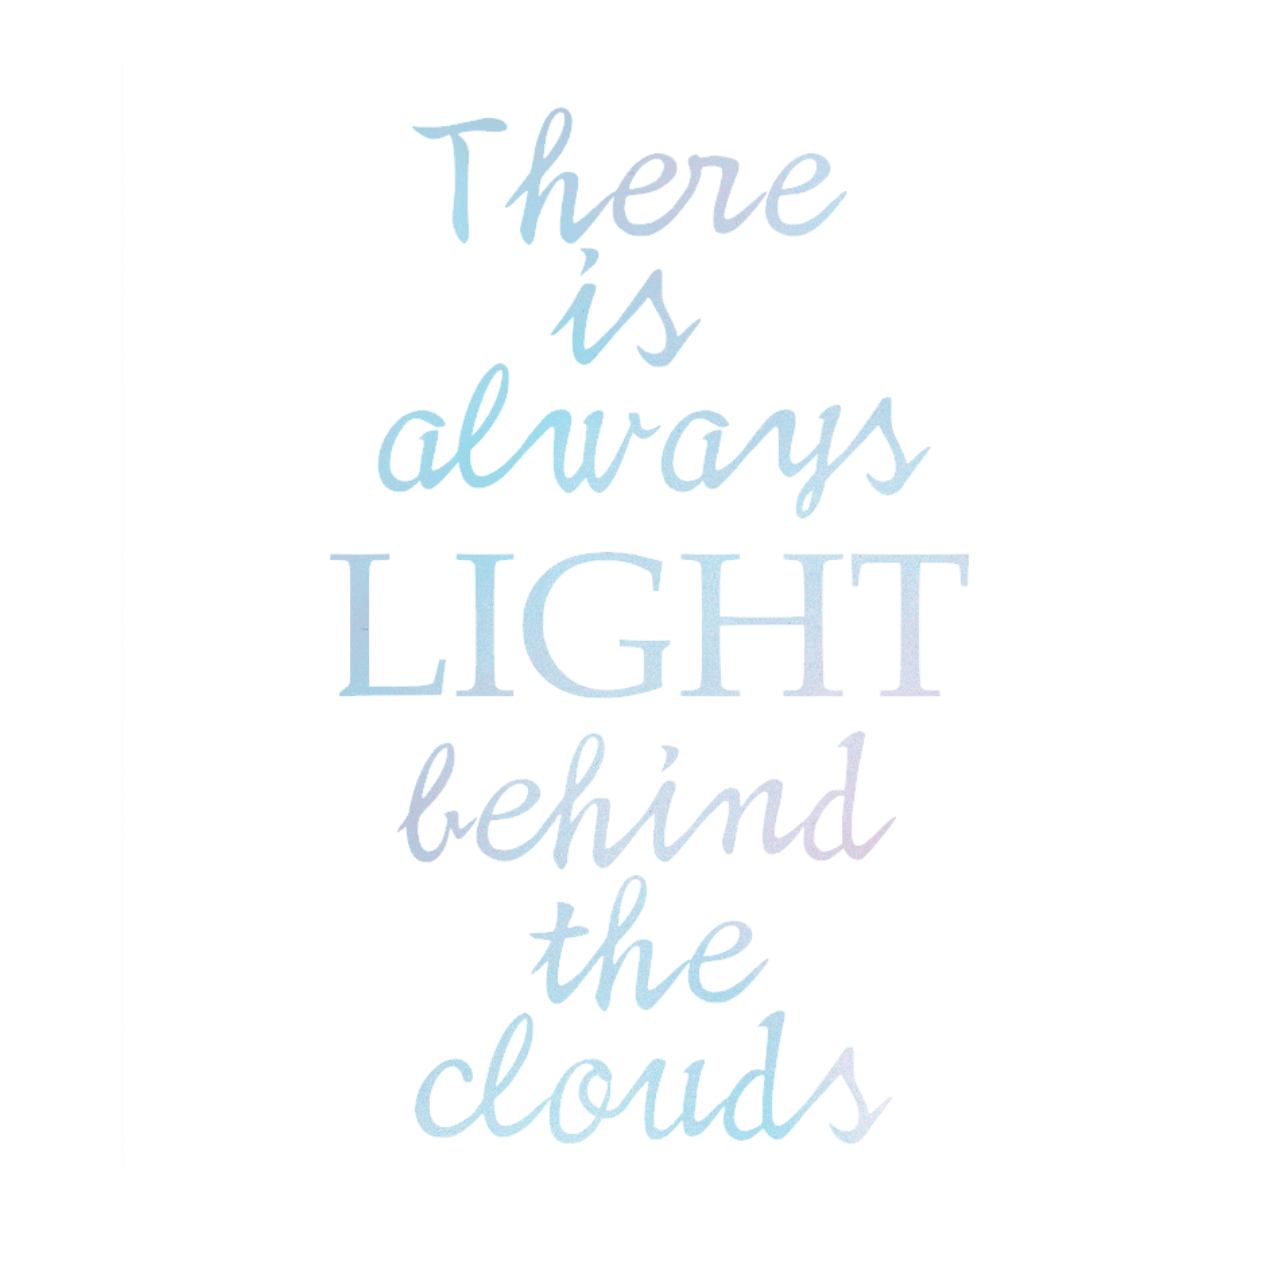 ウォールステッカー 名言 There Is Light Behind The Clouds 空ピンク 光沢 ルイーザ メイ オルコット スプレーアート Iby アイバイ ウォールステッカー 通販